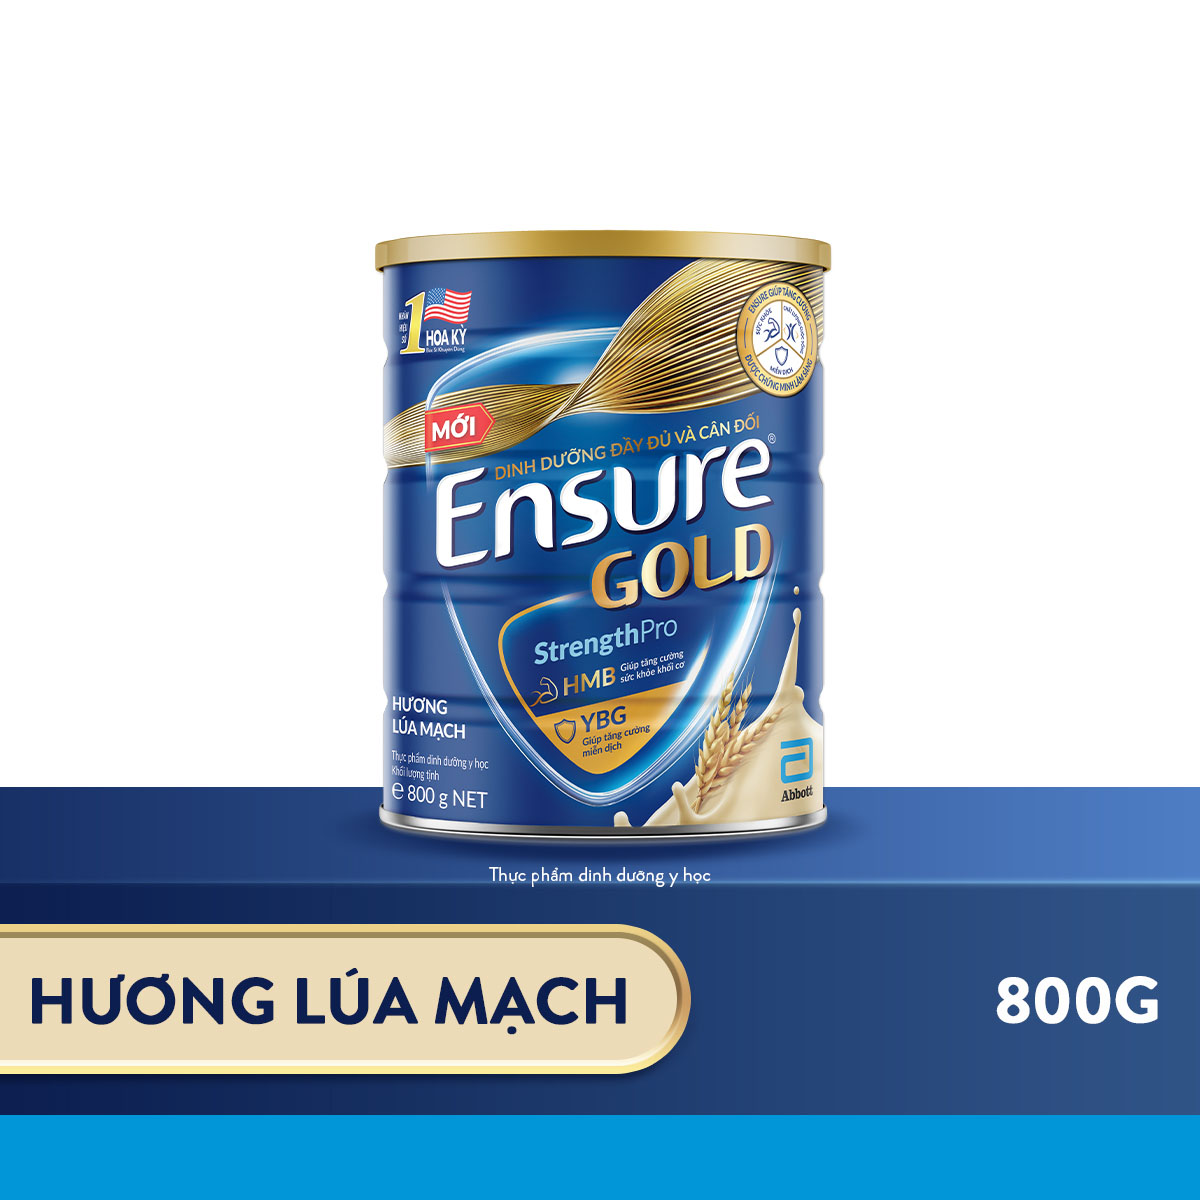 Thực phẩm dinh dưỡng y học Ensure Gold hương vani lúa mạch 800g/850g